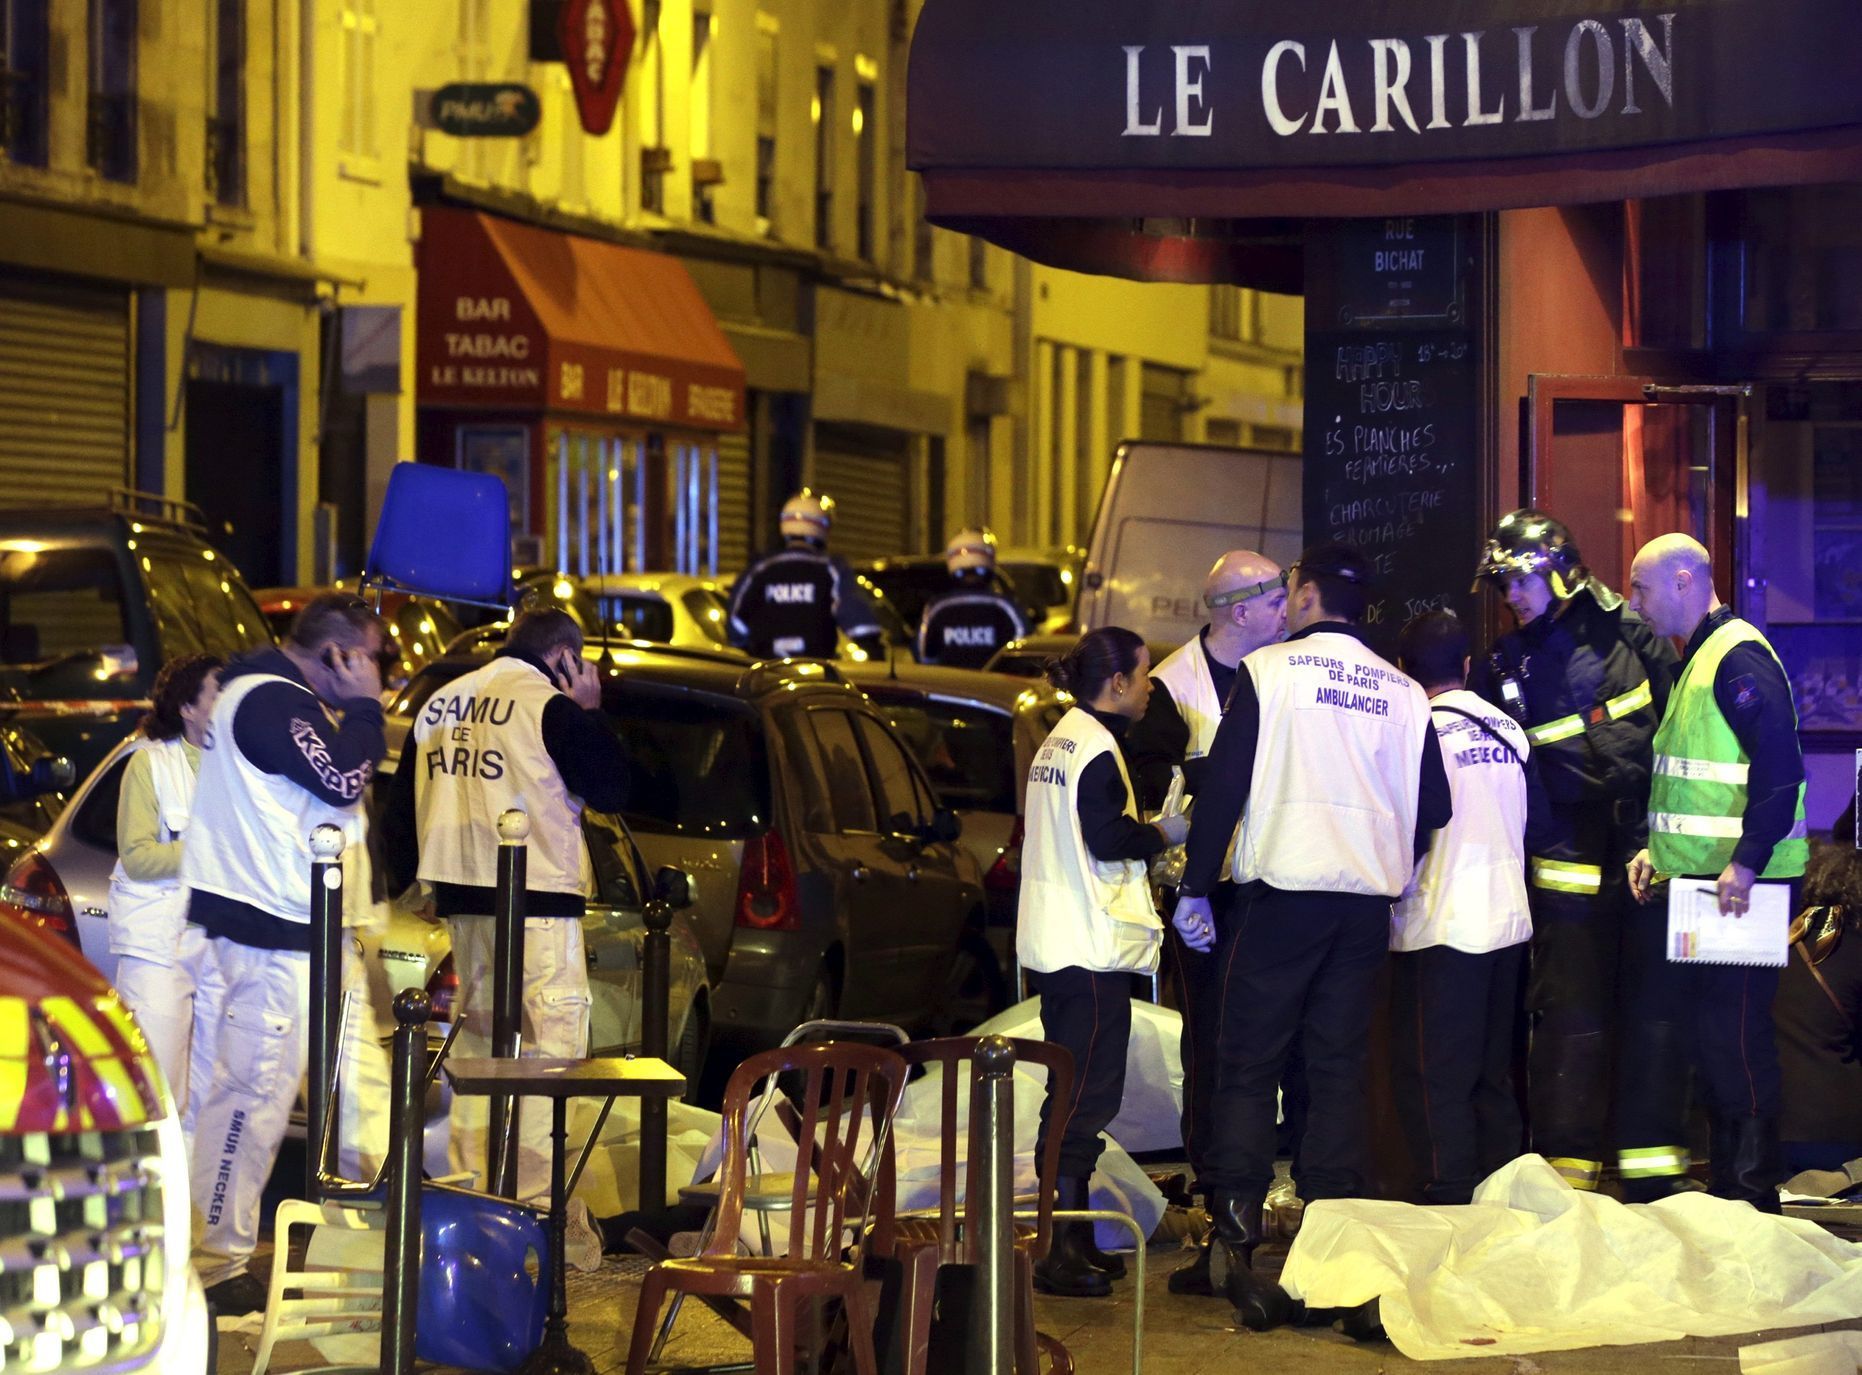 Teror v Paříži - zásah u restaurace